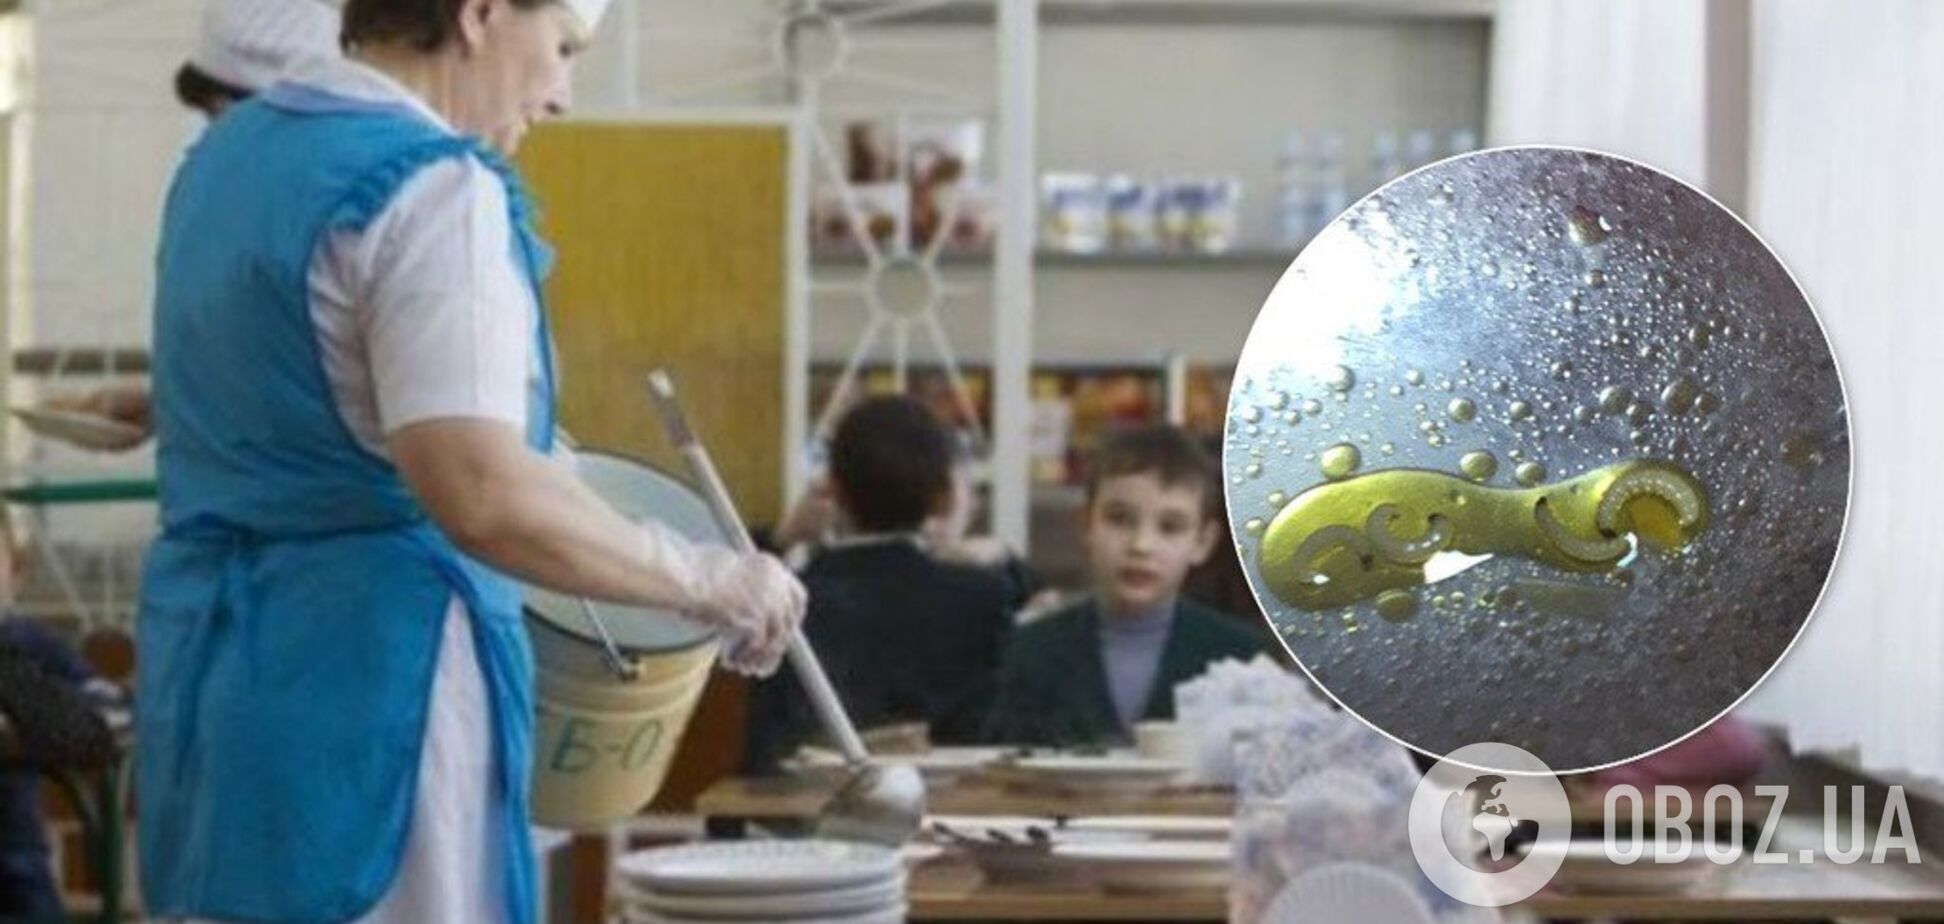 Черви на обед: школа в Одессе попала в скандал из-за столовой